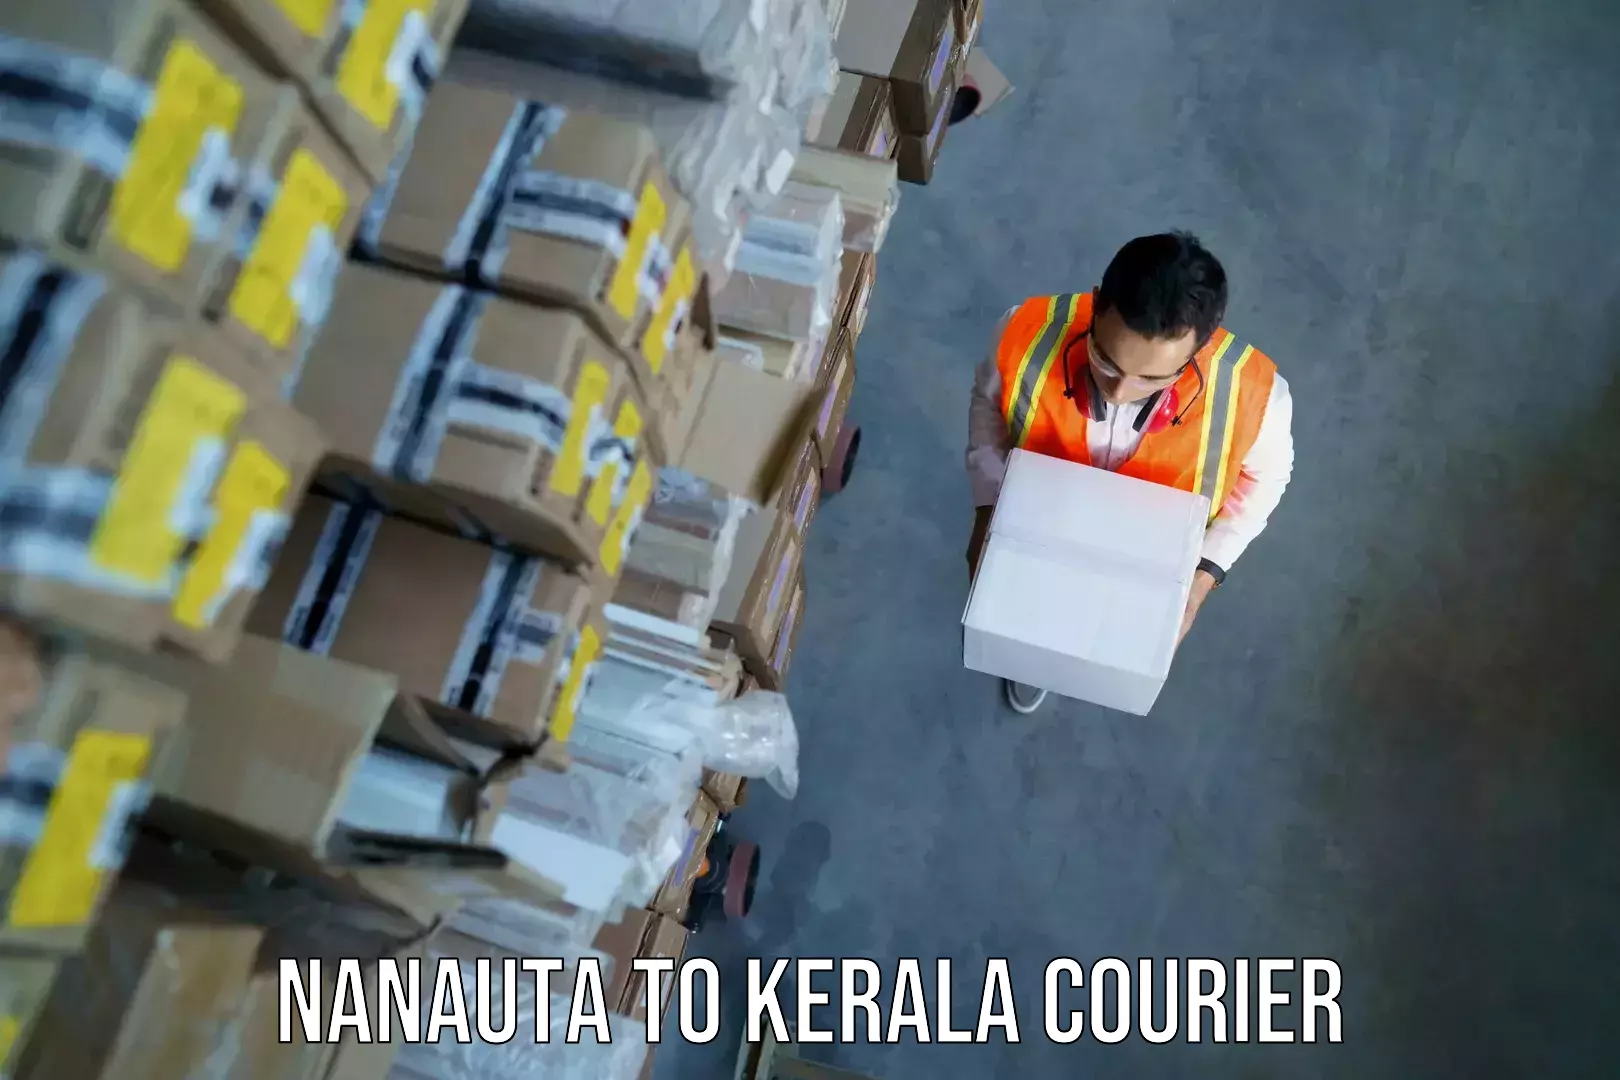 Overnight luggage courier Nanauta to Kannapuram